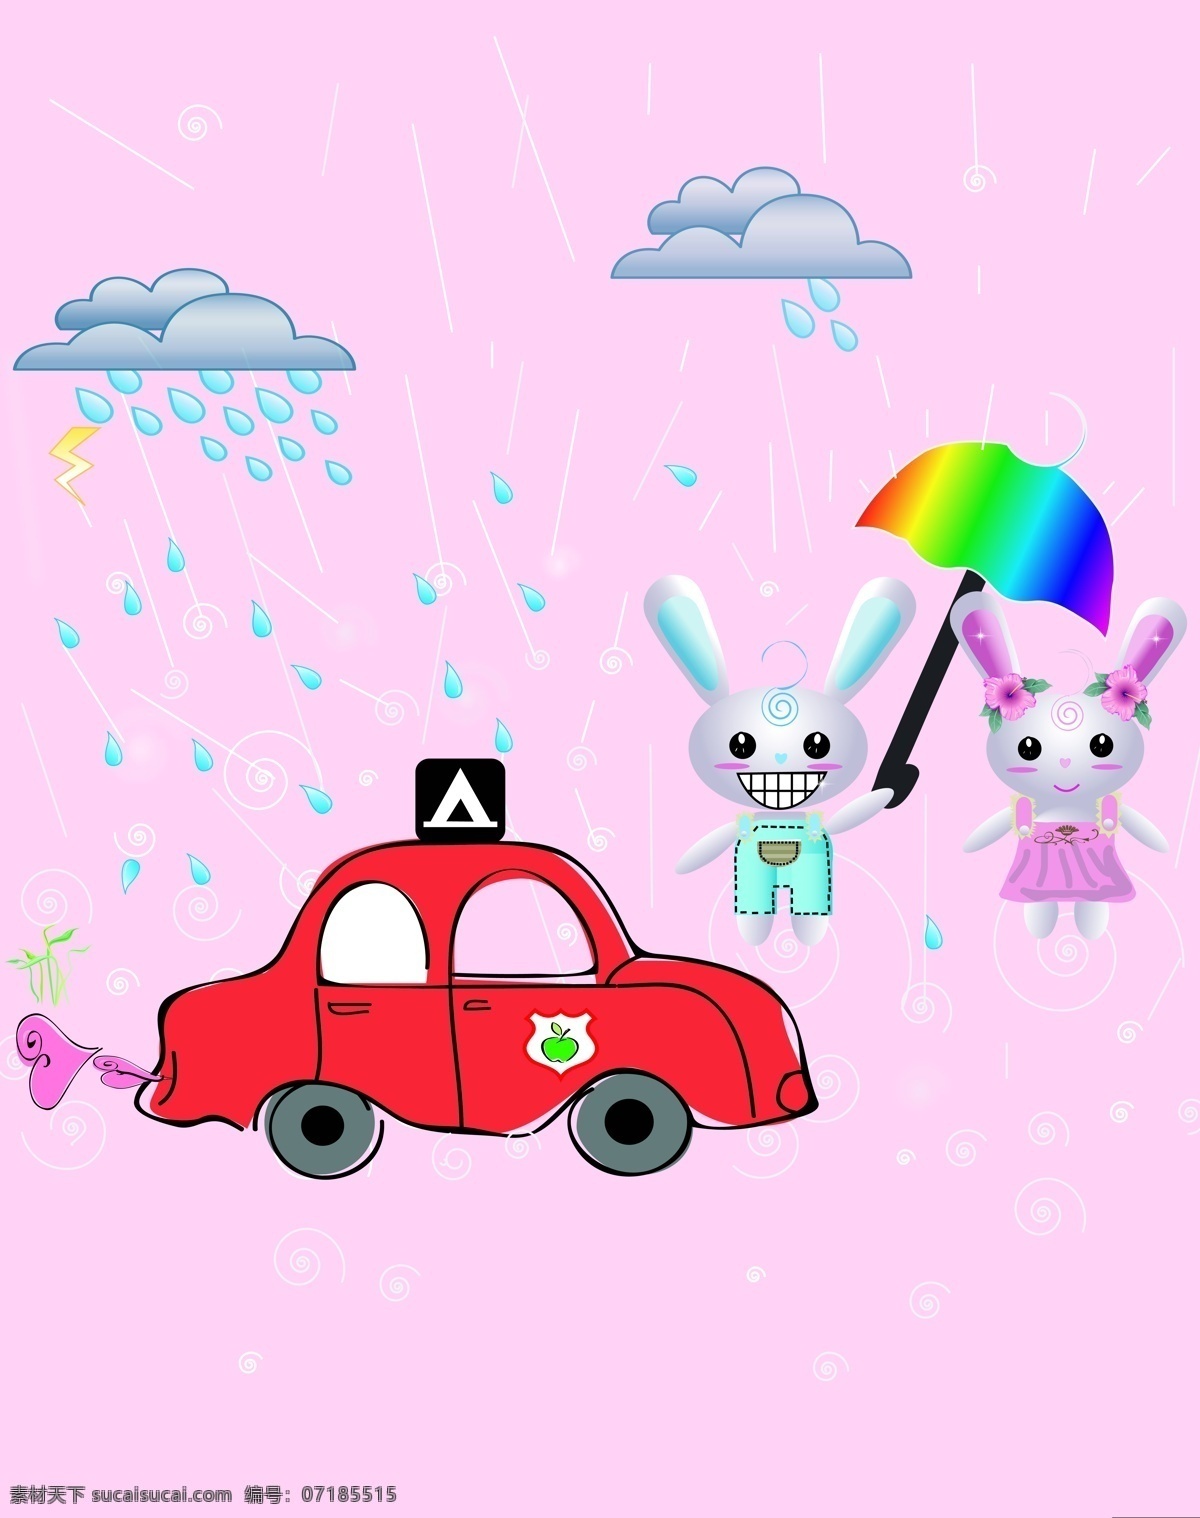 卡通移门 卡通 汽车 兔子 雨伞 雨滴 云 出租车 移门 设计图库 底纹边框 移门图案